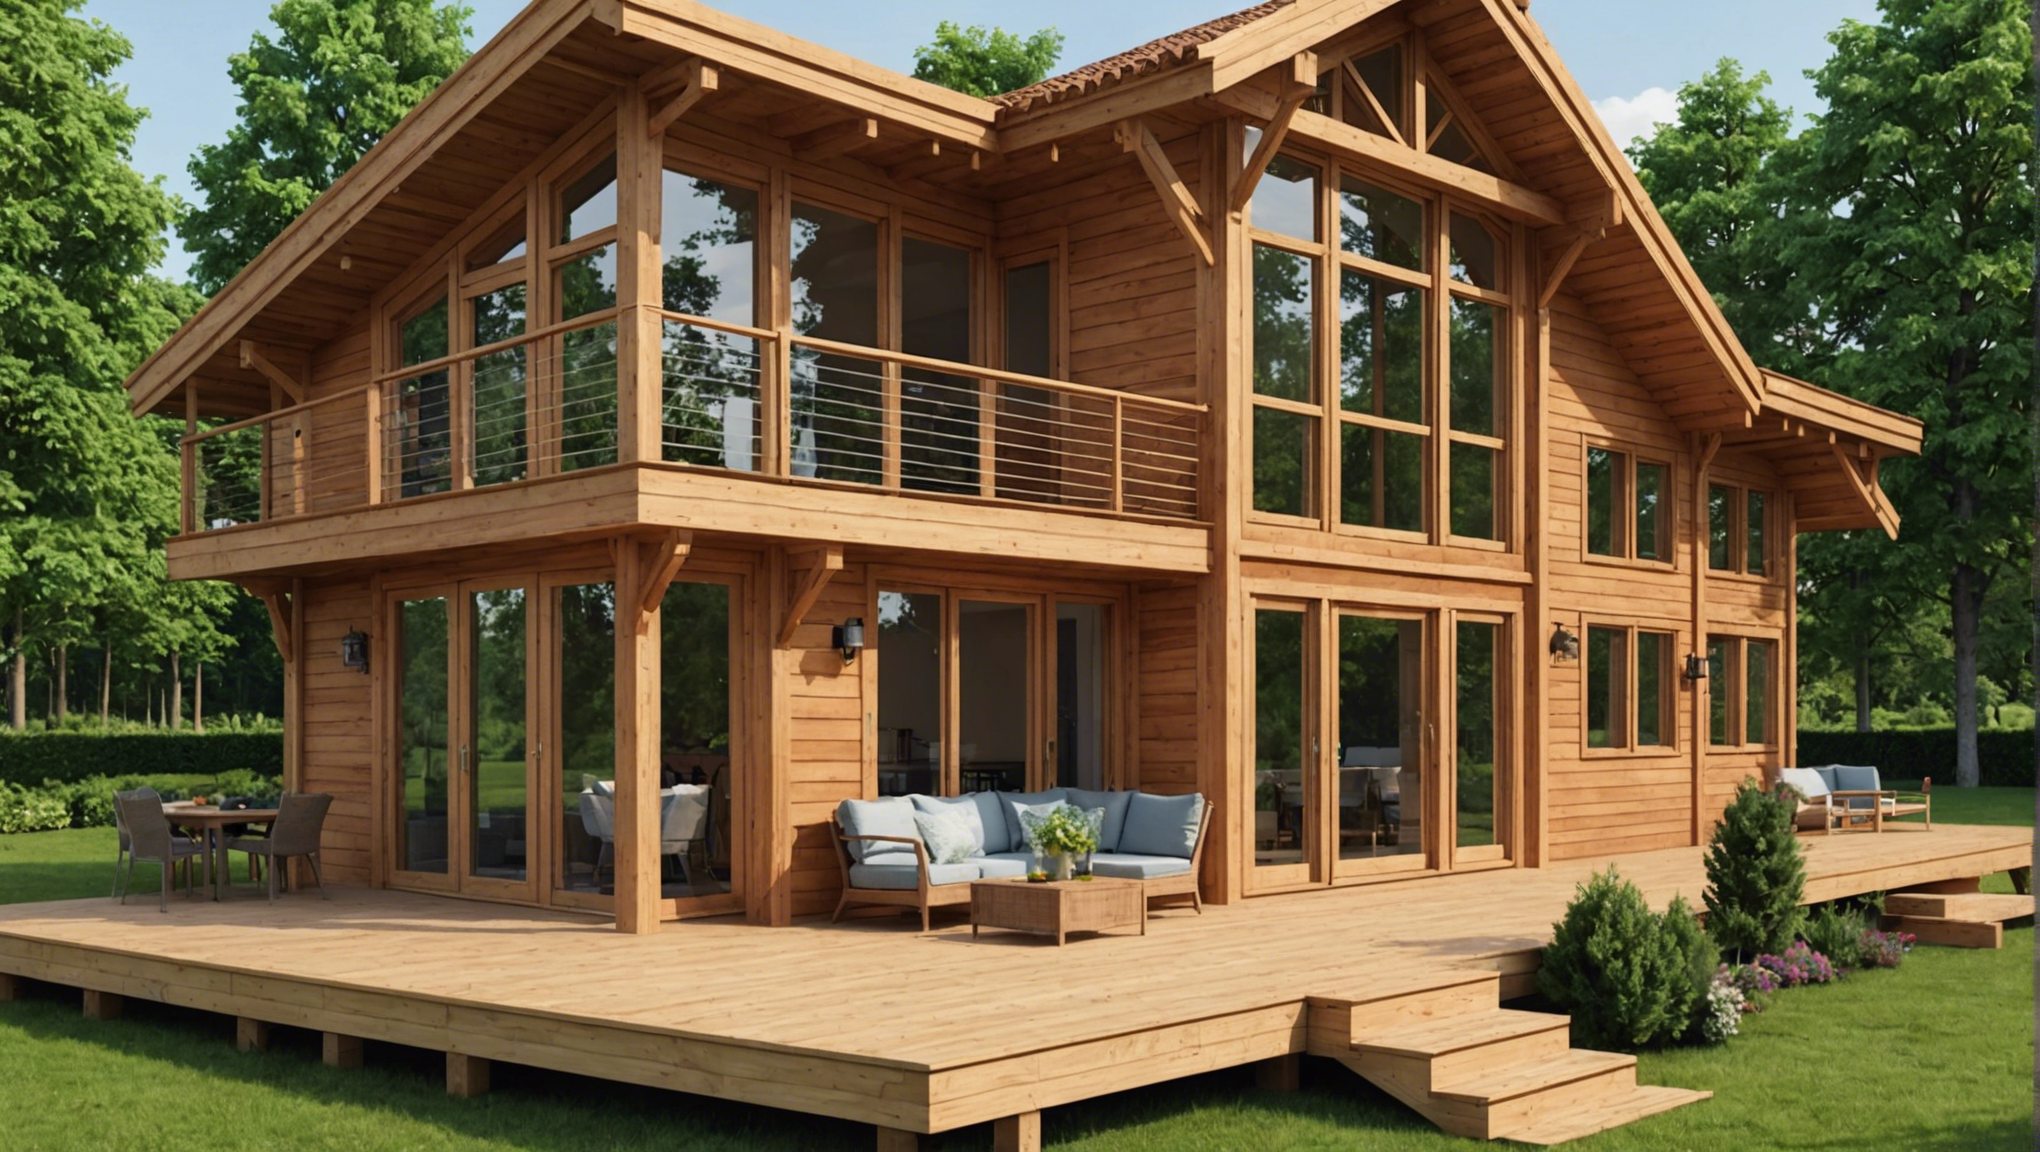 découvrez les avantages de choisir la construction d'une maison en bois et explorez les raisons pour lesquelles cette option est de plus en plus populaire. opter pour une maison en bois, c'est choisir l'esthétique, la durabilité et l'empreinte écologique.